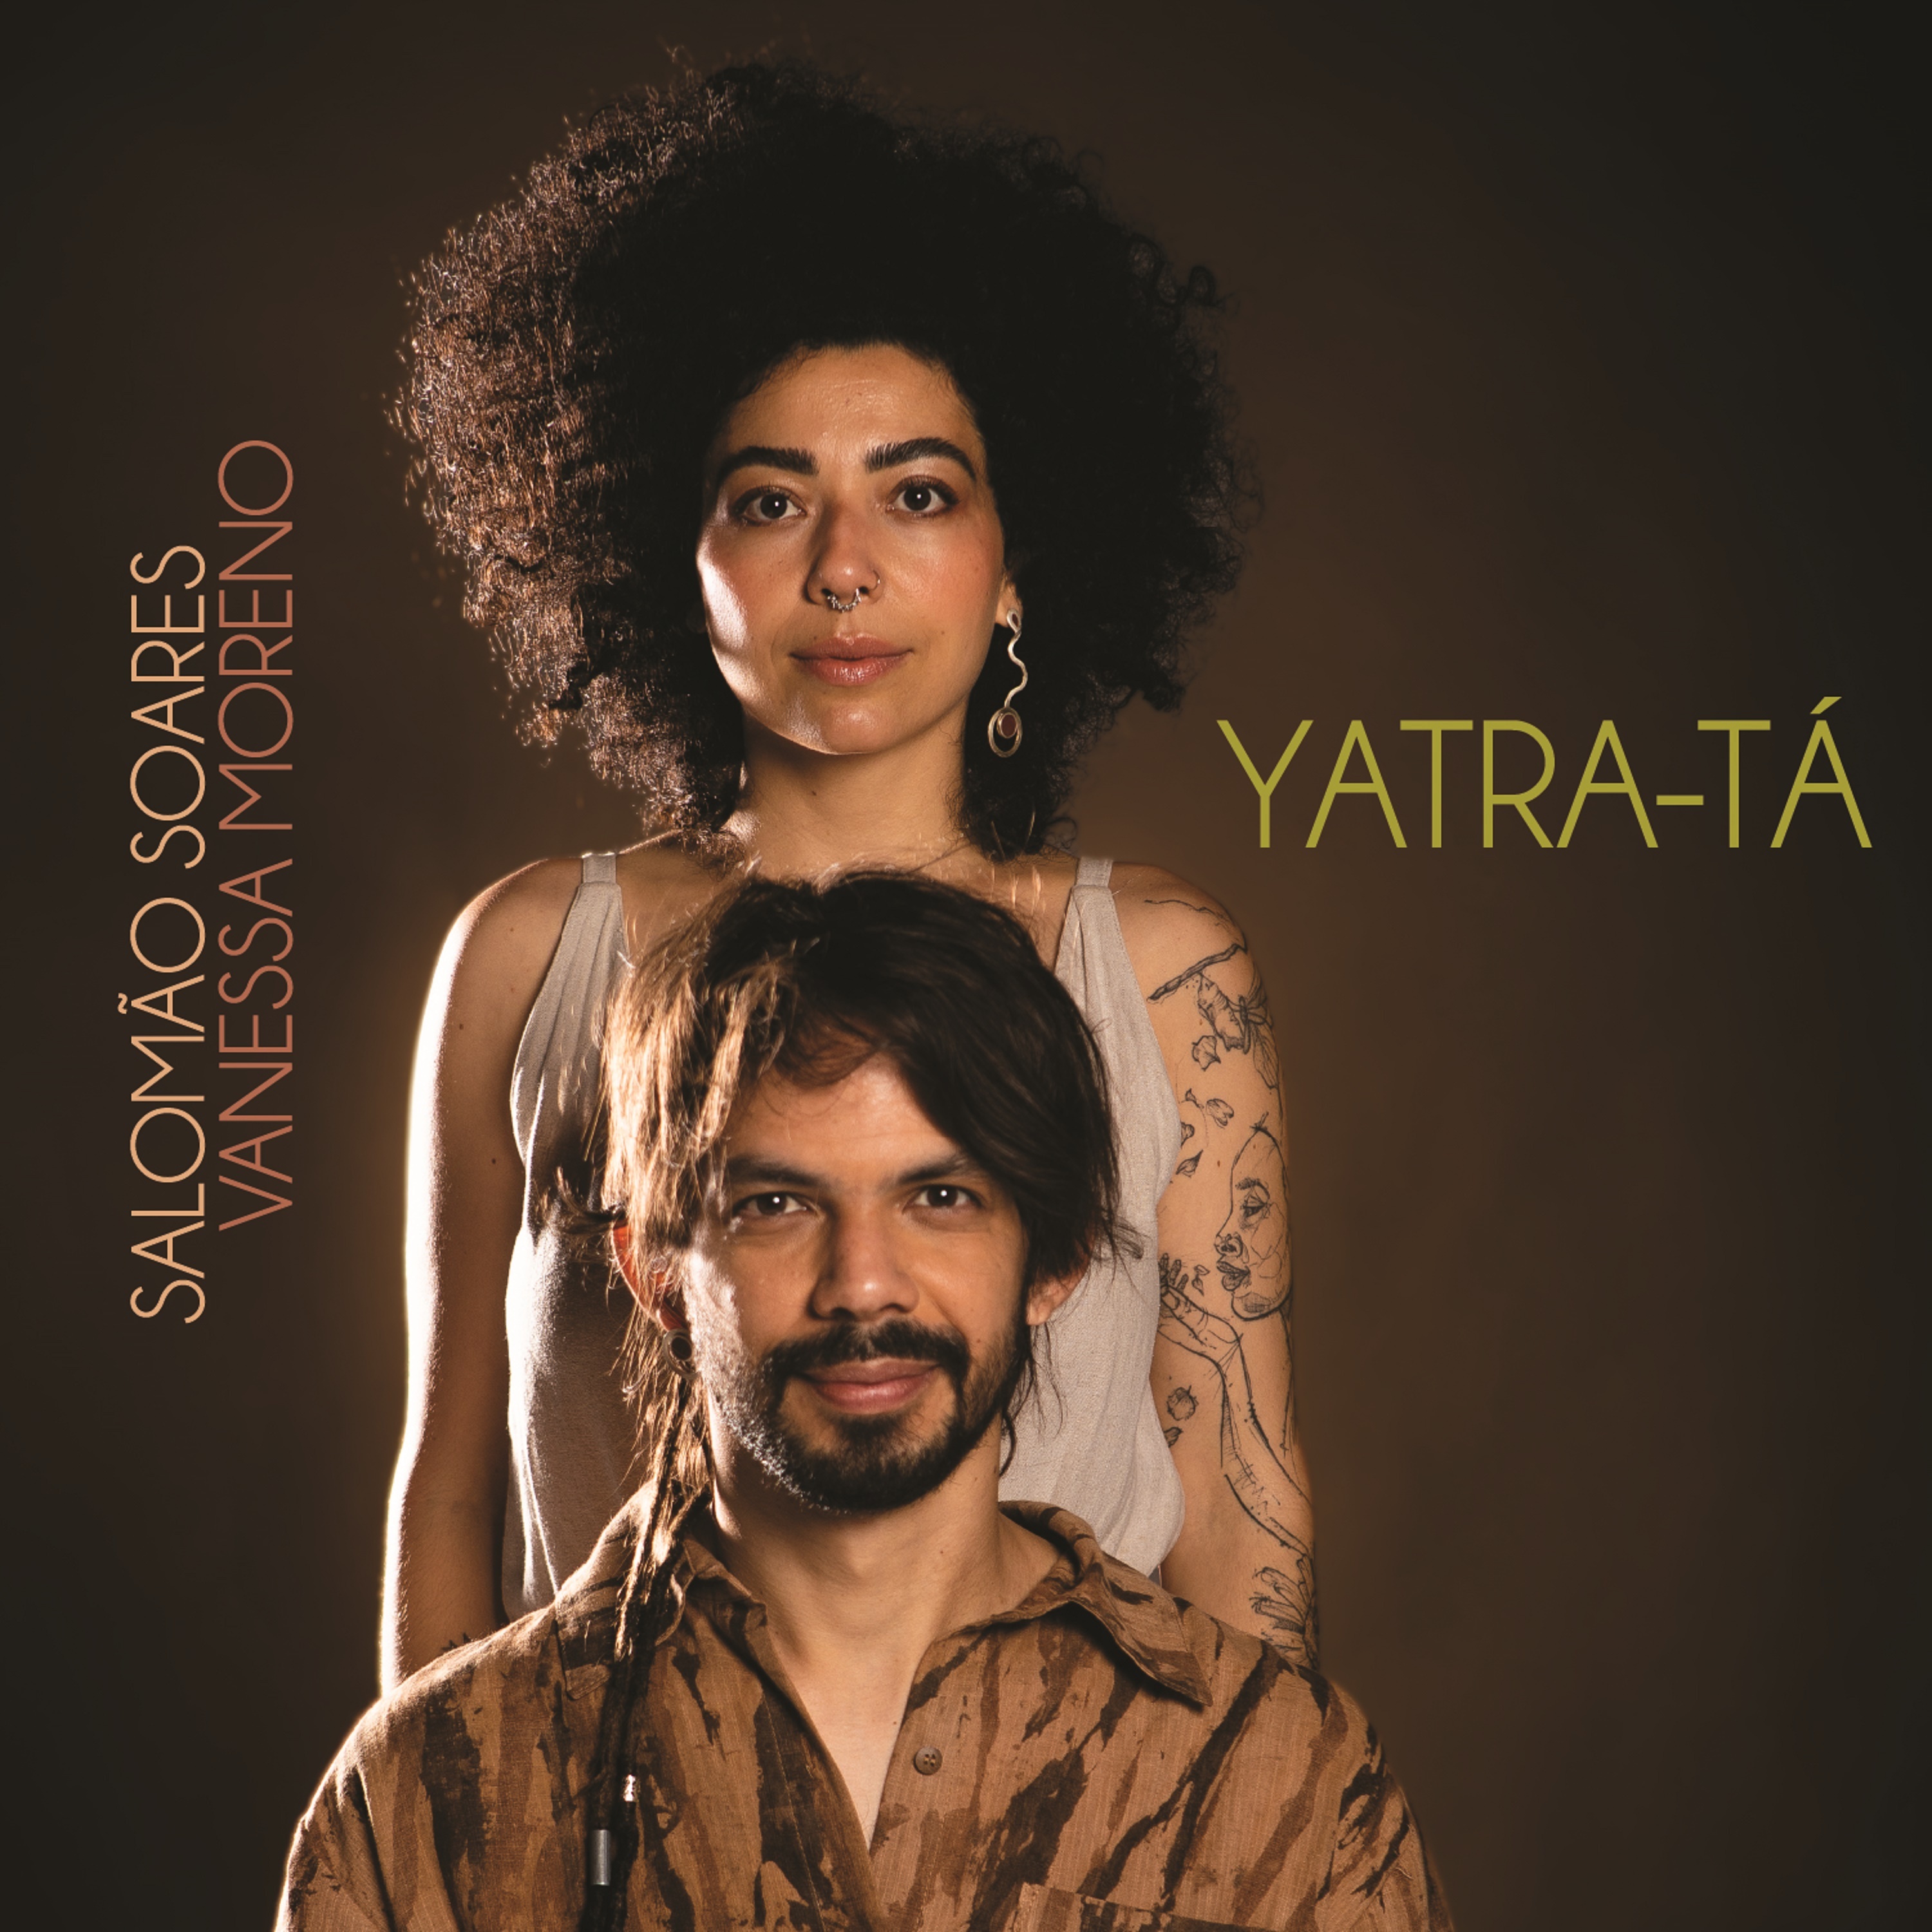 Capa do disco “Yatra-T�”, de “Salom�o Soares e Vanessa Moreno”